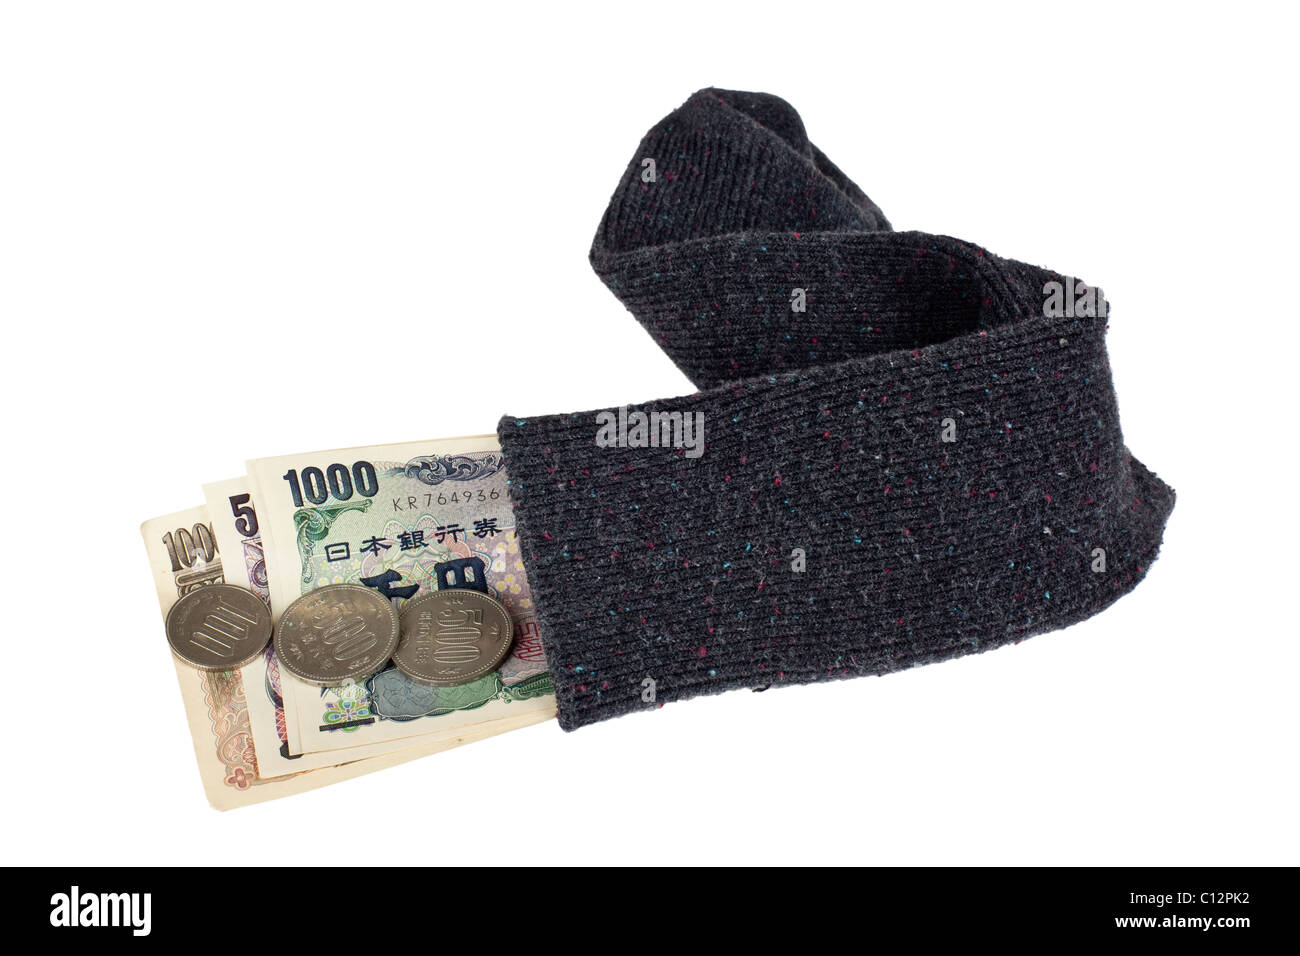 Monnaie japonaise dans une chaussette isolé sur fond blanc Banque D'Images